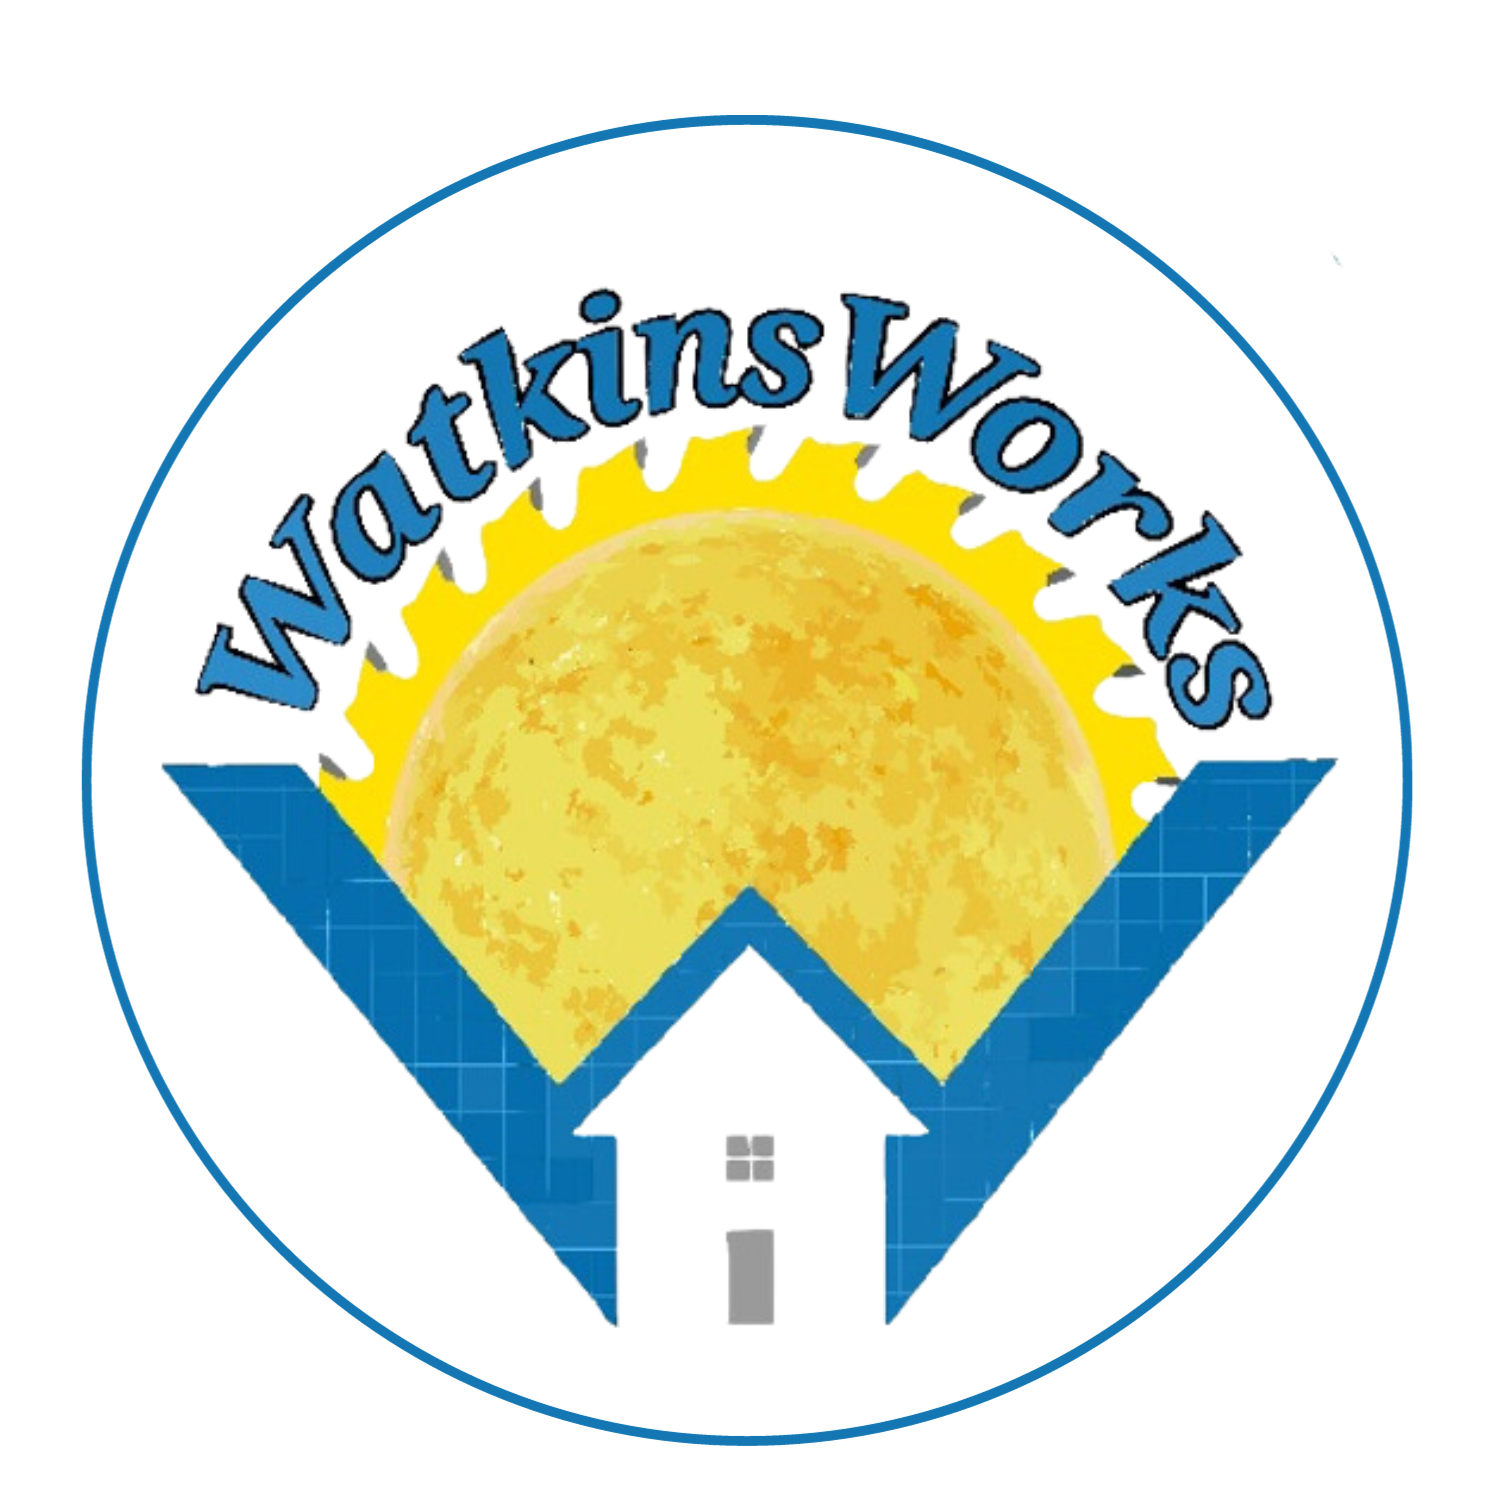 Watkins Works